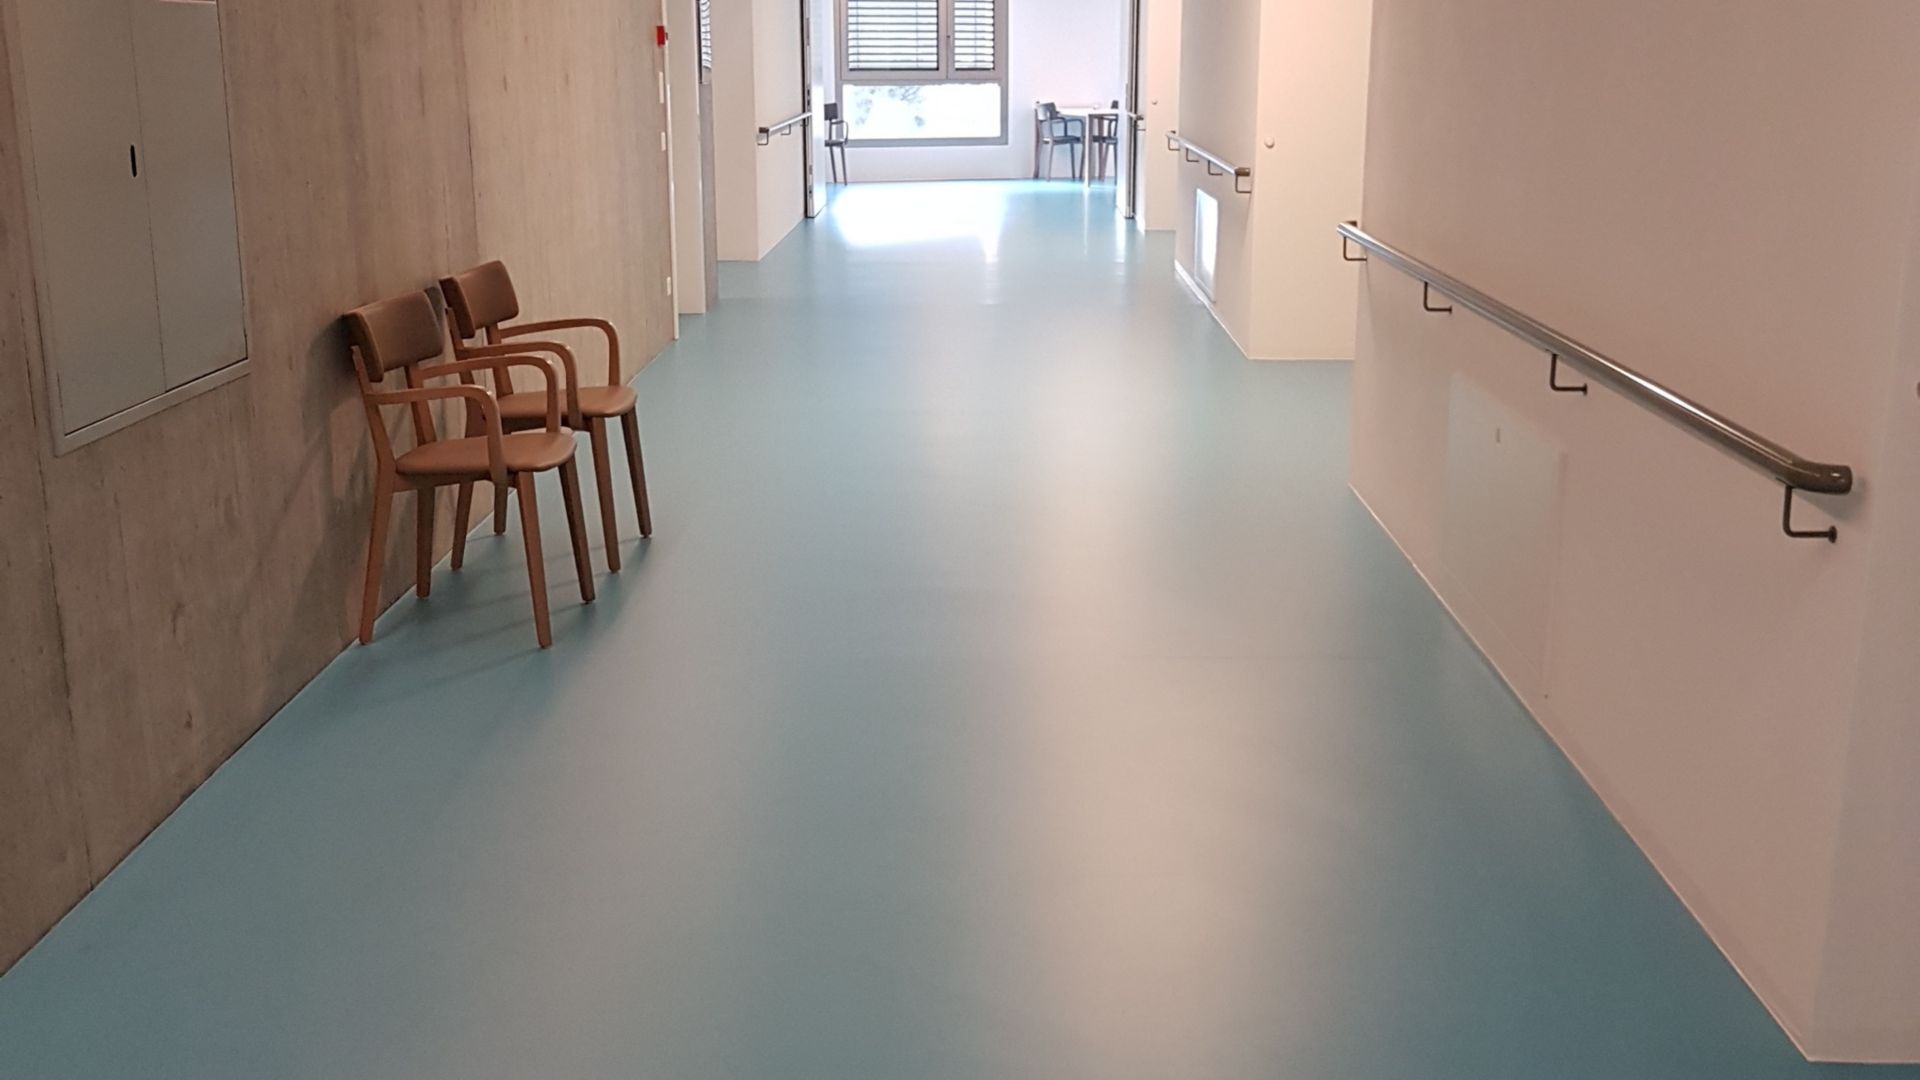 Sika ComfortFloor® blue floor in hospital hallway in Switzerland